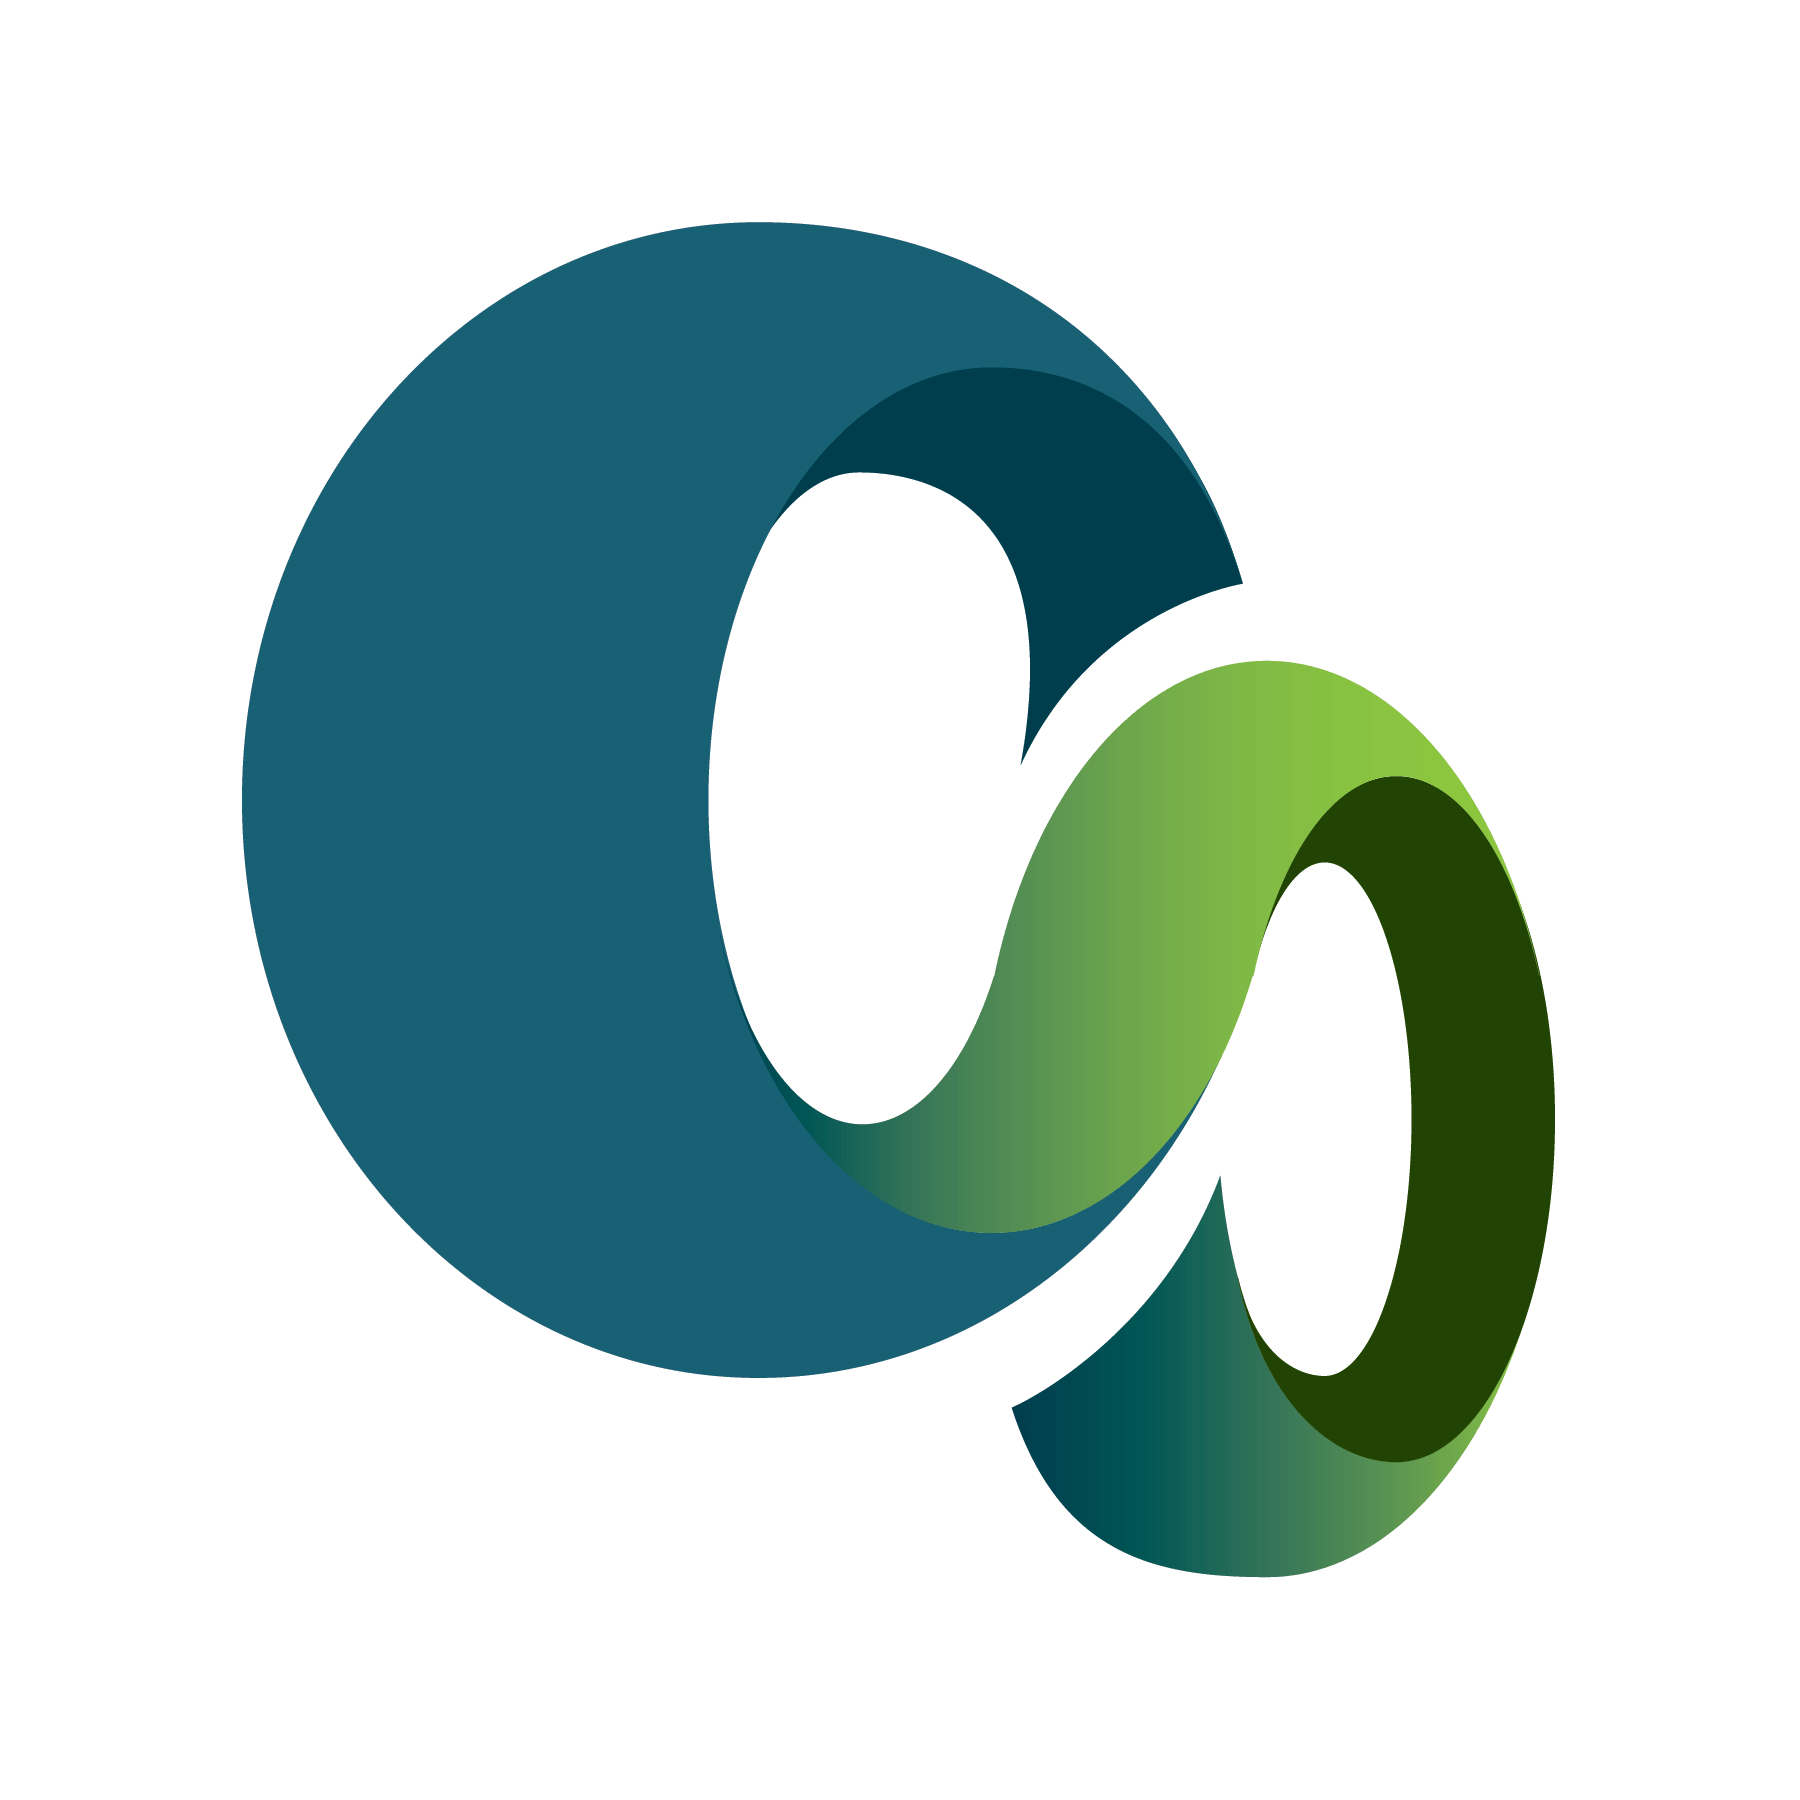 CS Logo - Cs Logos